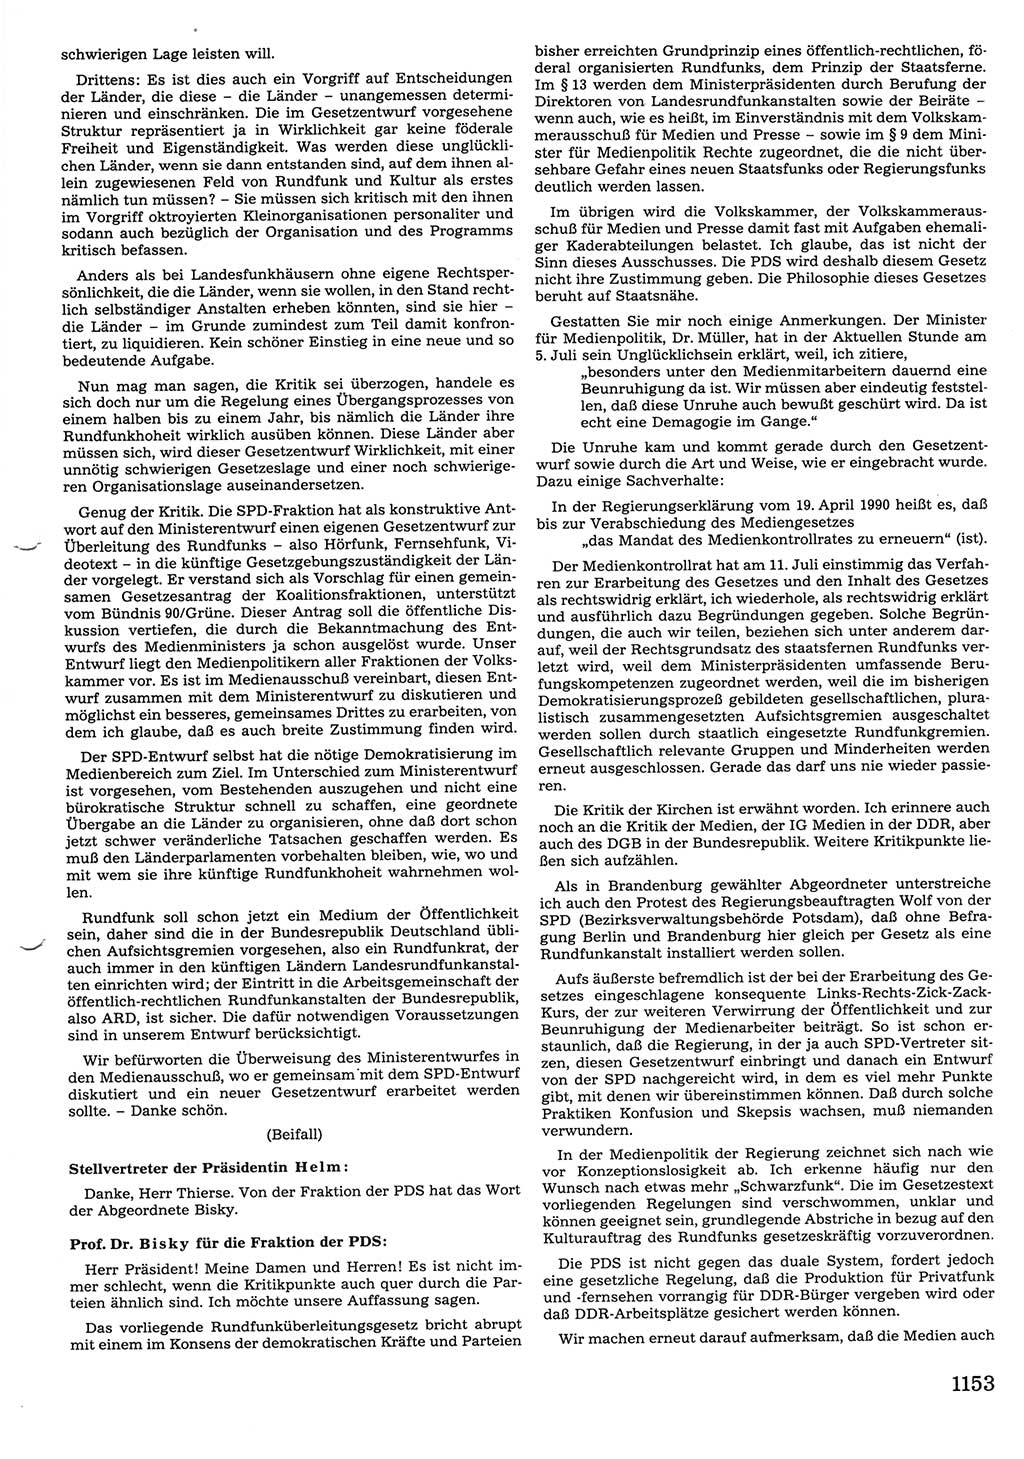 Tagungen der Volkskammer (VK) der Deutschen Demokratischen Republik (DDR), 10. Wahlperiode 1990, Seite 1153 (VK. DDR 10. WP. 1990, Prot. Tg. 1-38, 5.4.-2.10.1990, S. 1153)